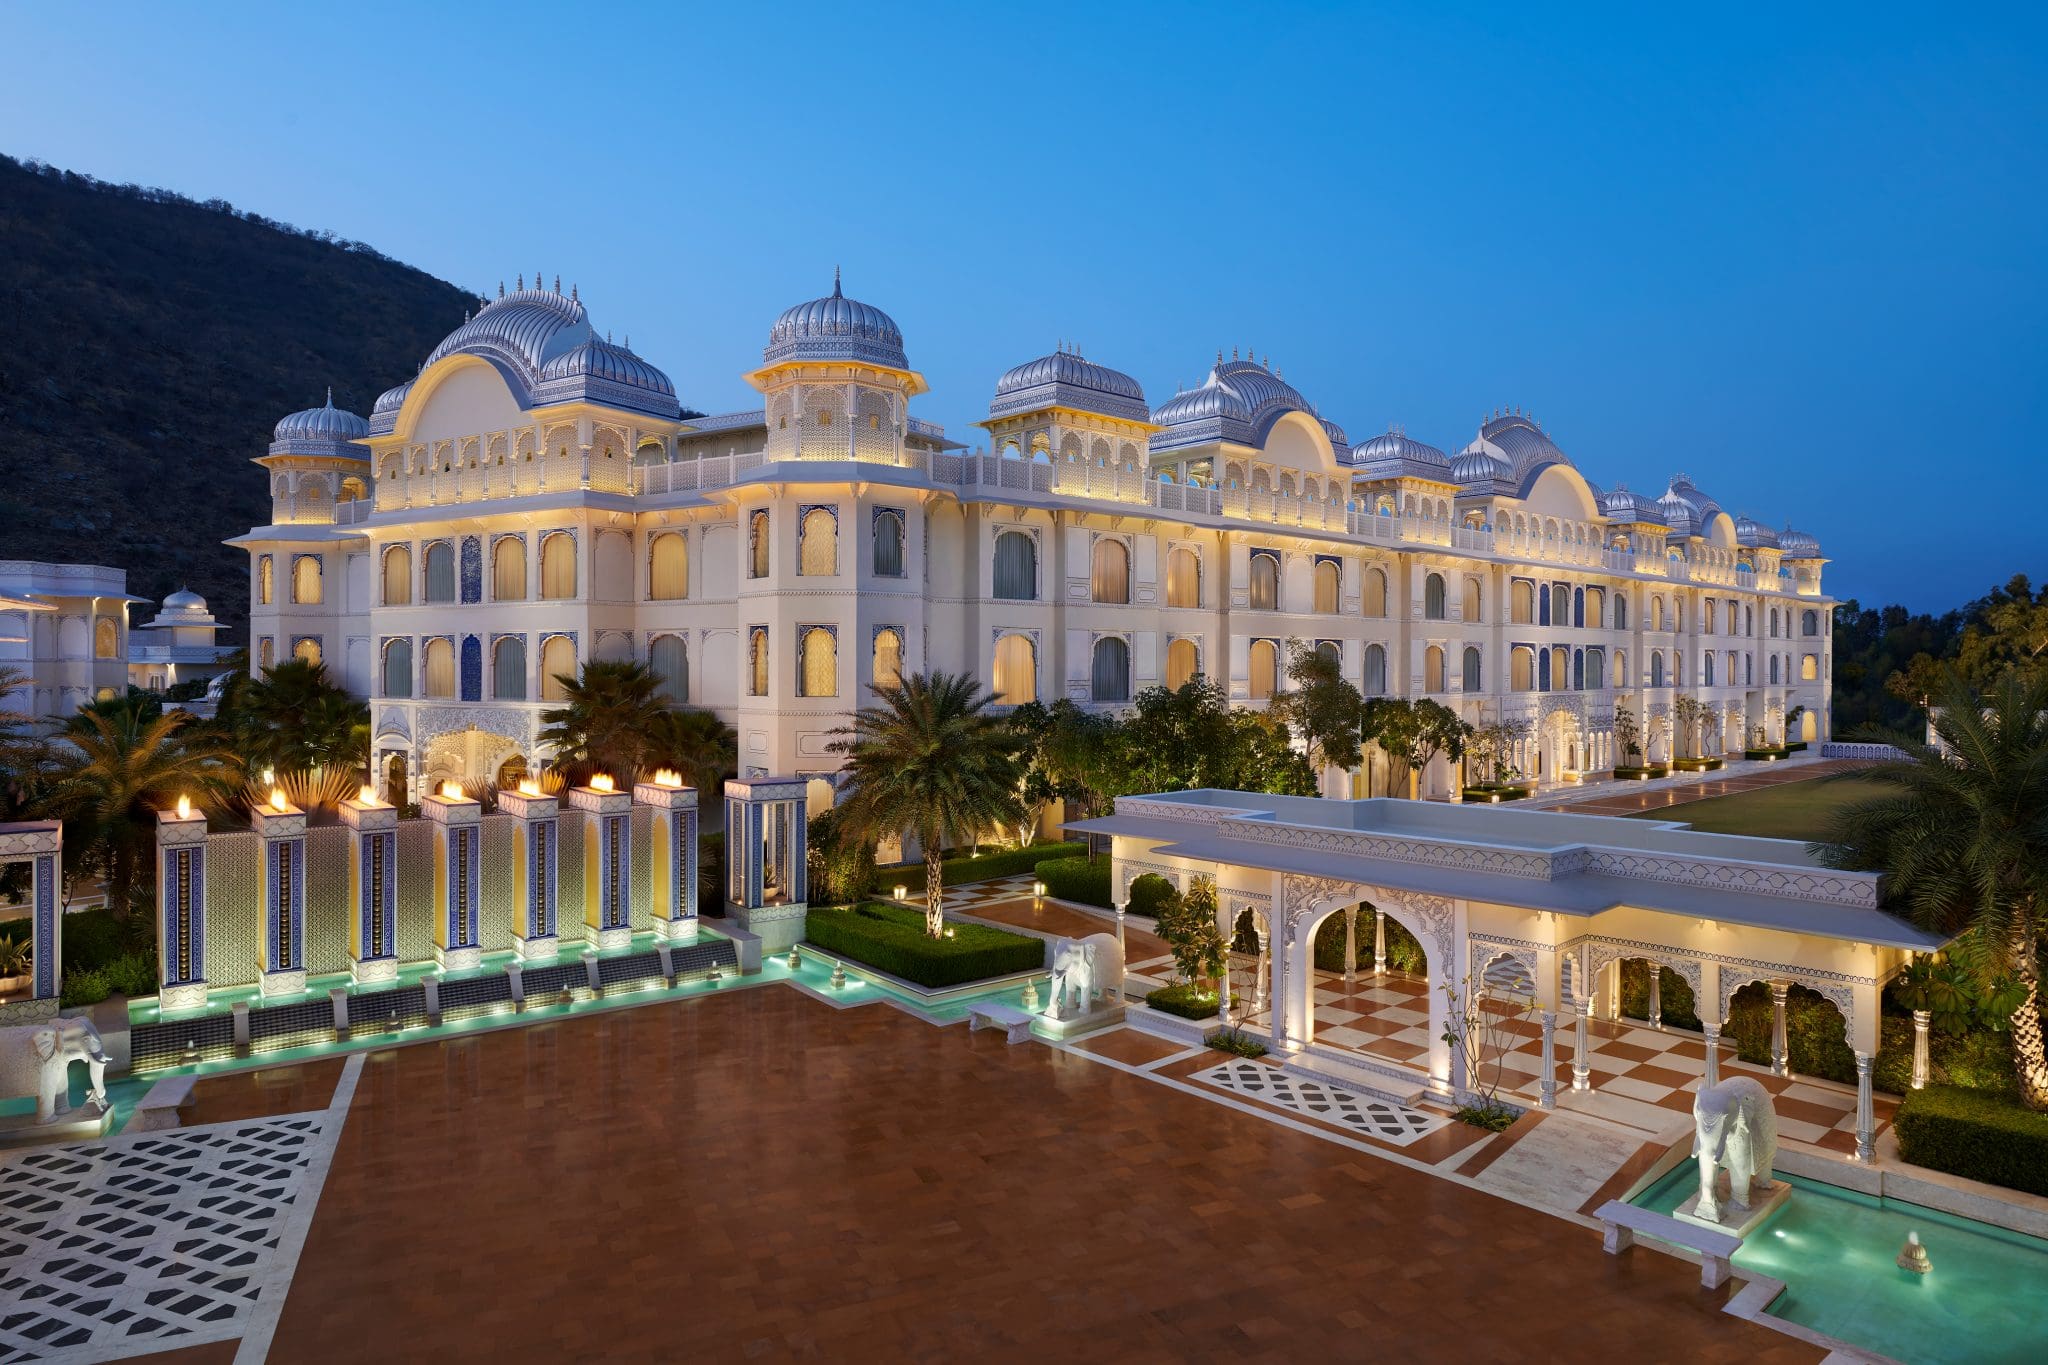 rajasthan tourism hotel in jaipur